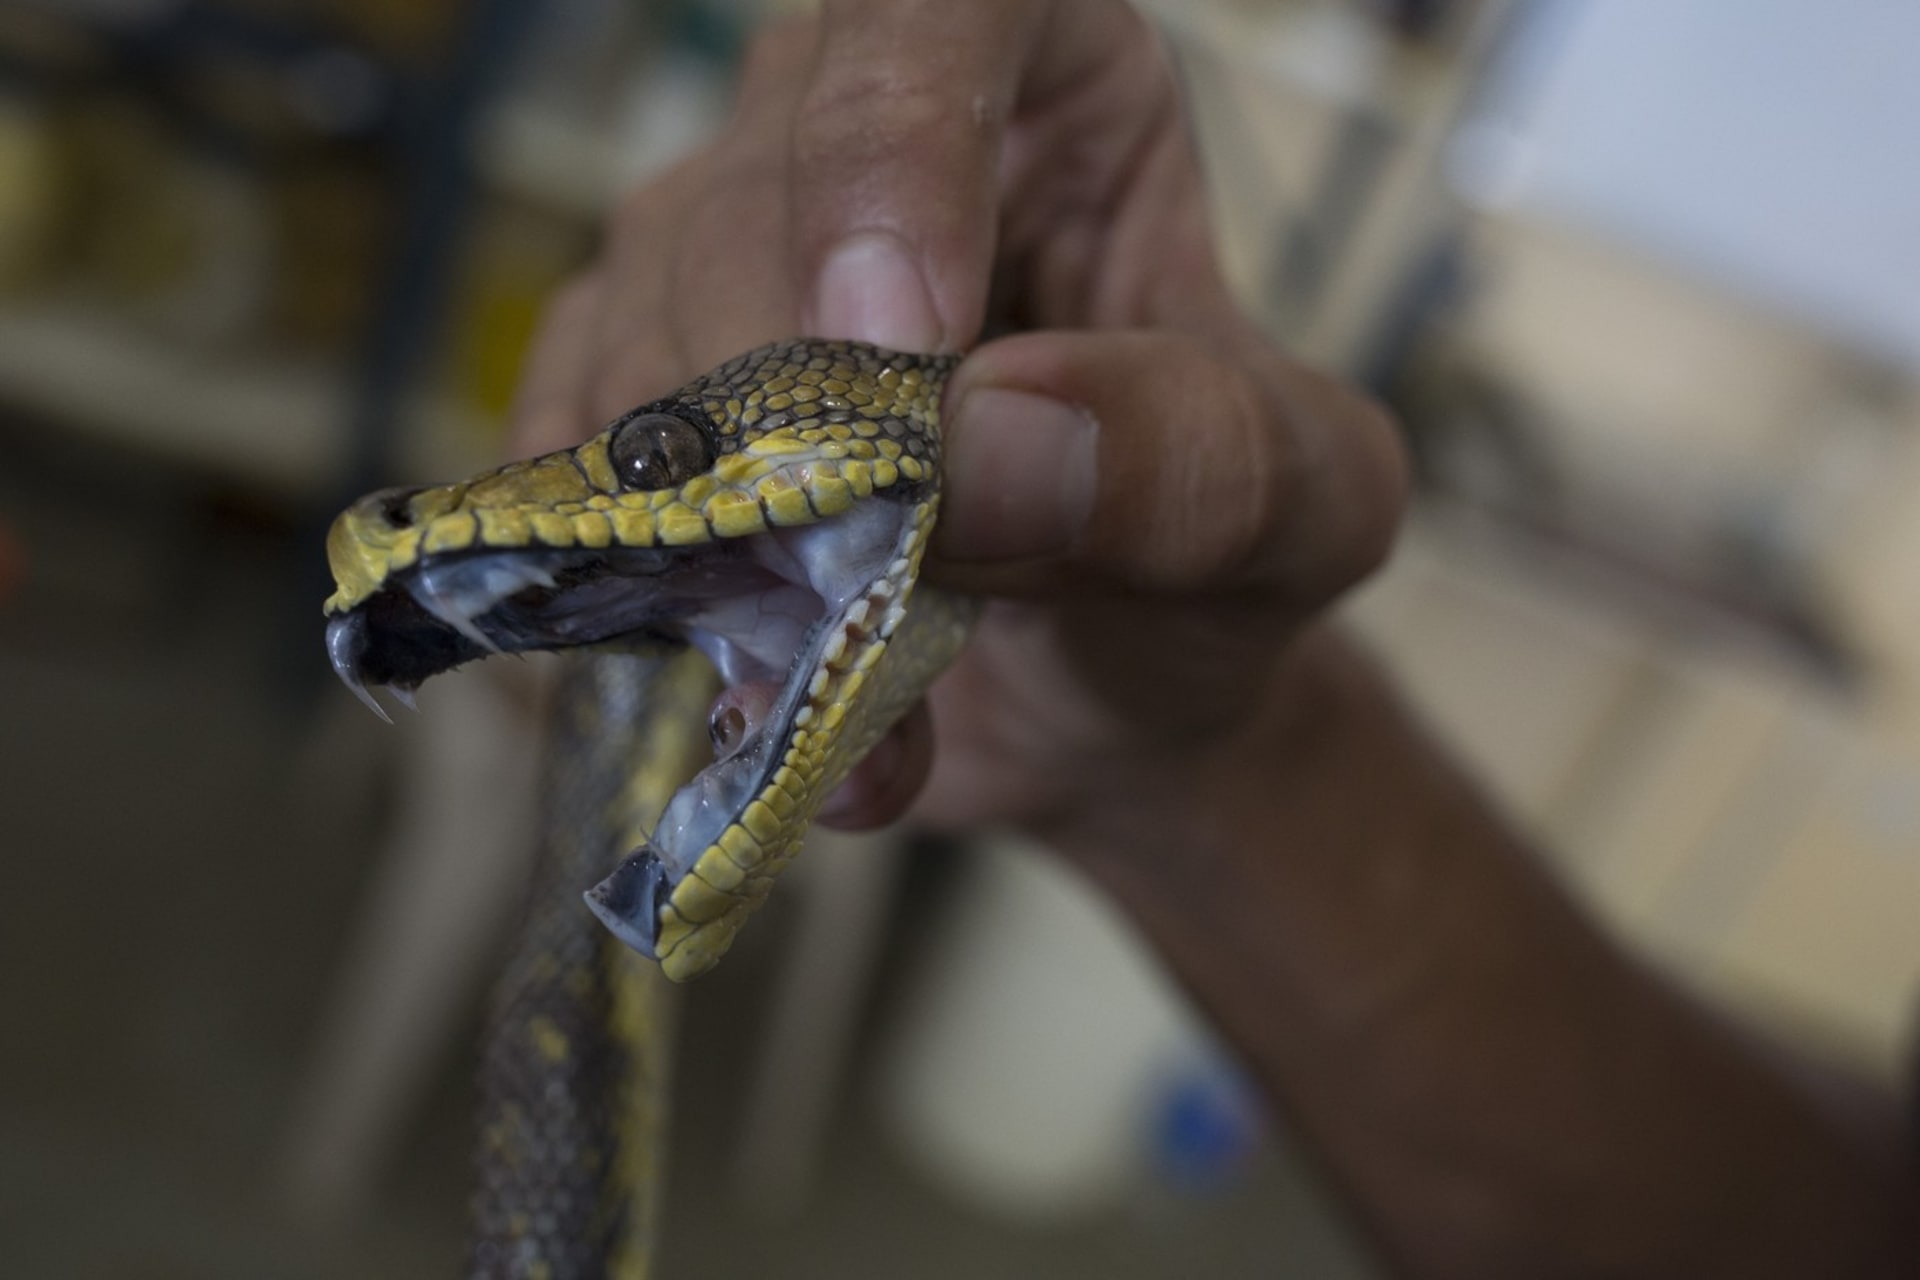 Hadi chovaní prodejci drog jsou často vyhladověli a mají vytrhnuté zuby. Nezřídka kdy v důsledku takového zacházení uhynou.